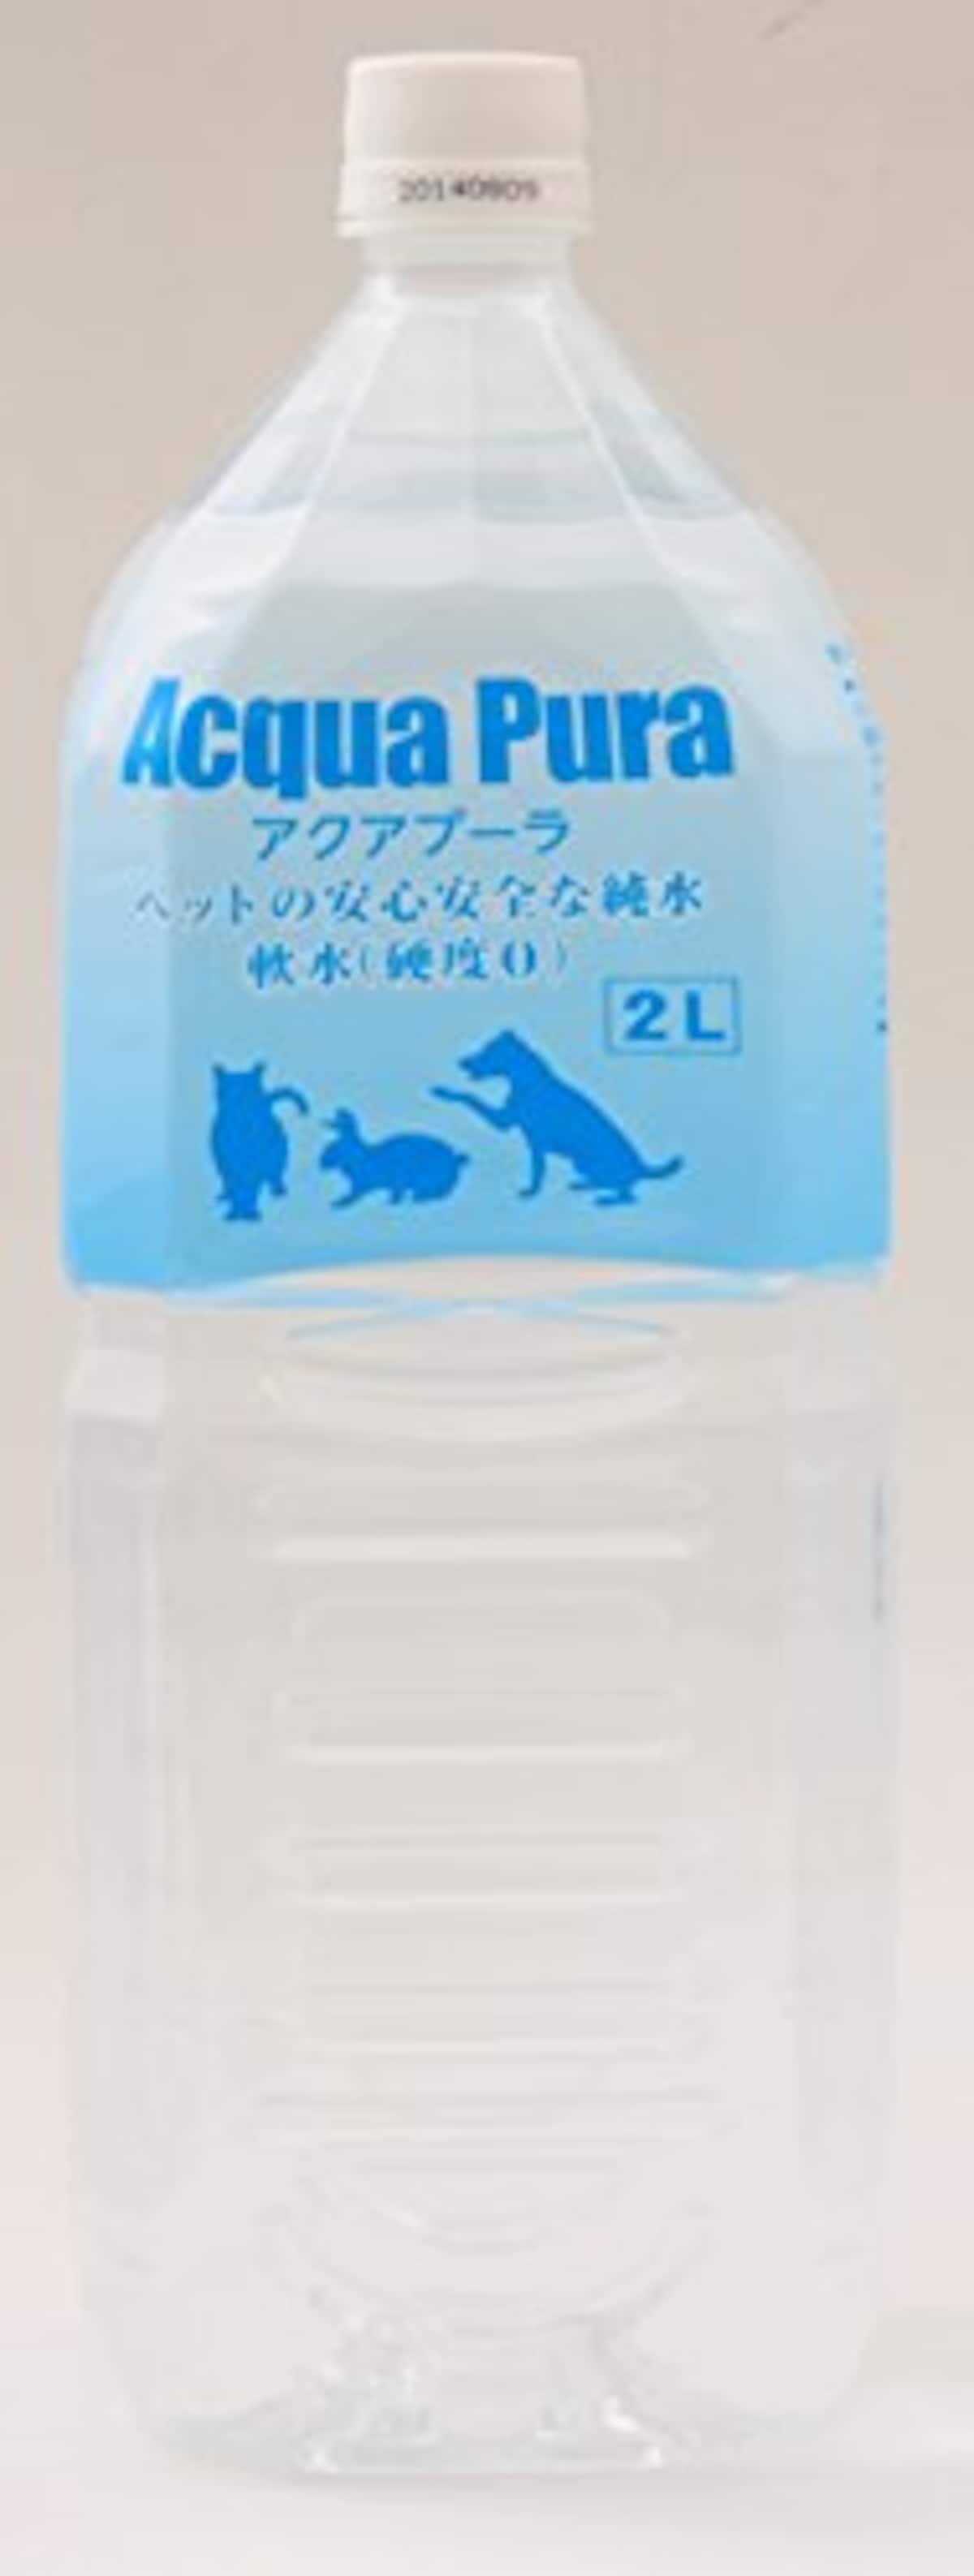  【獣医師推薦】ペットの安心安全な純水 画像2 